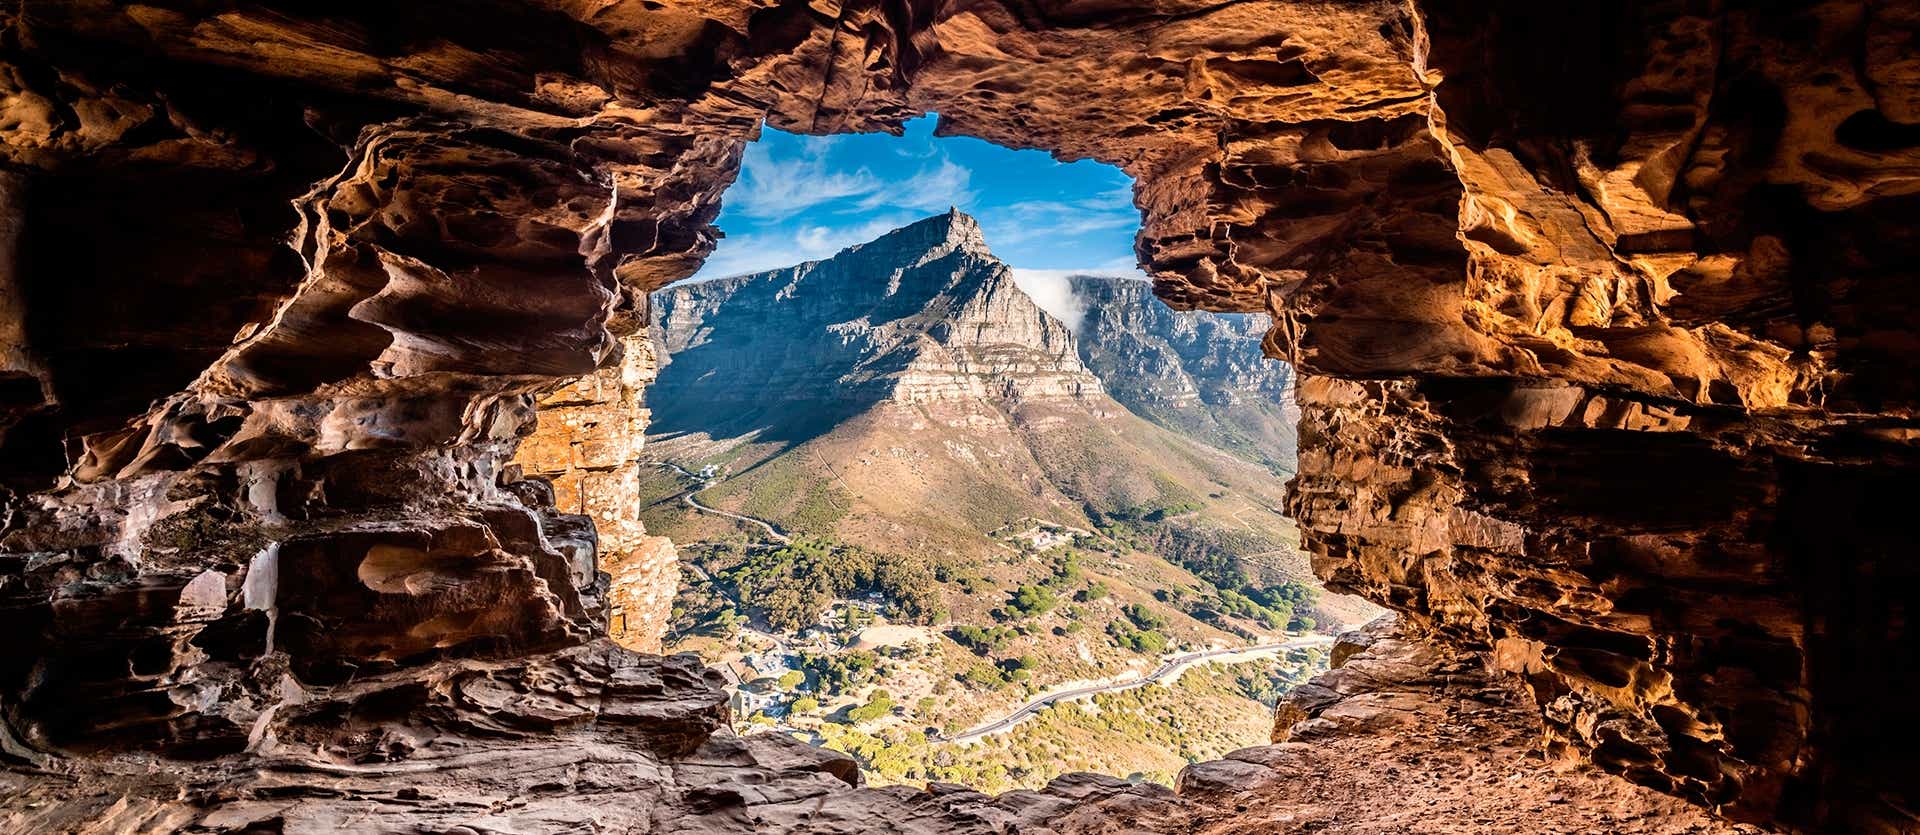 Table Mountain <span class="iconos separador"></span> Cape Town <span class="iconos separador"></span> South Africa